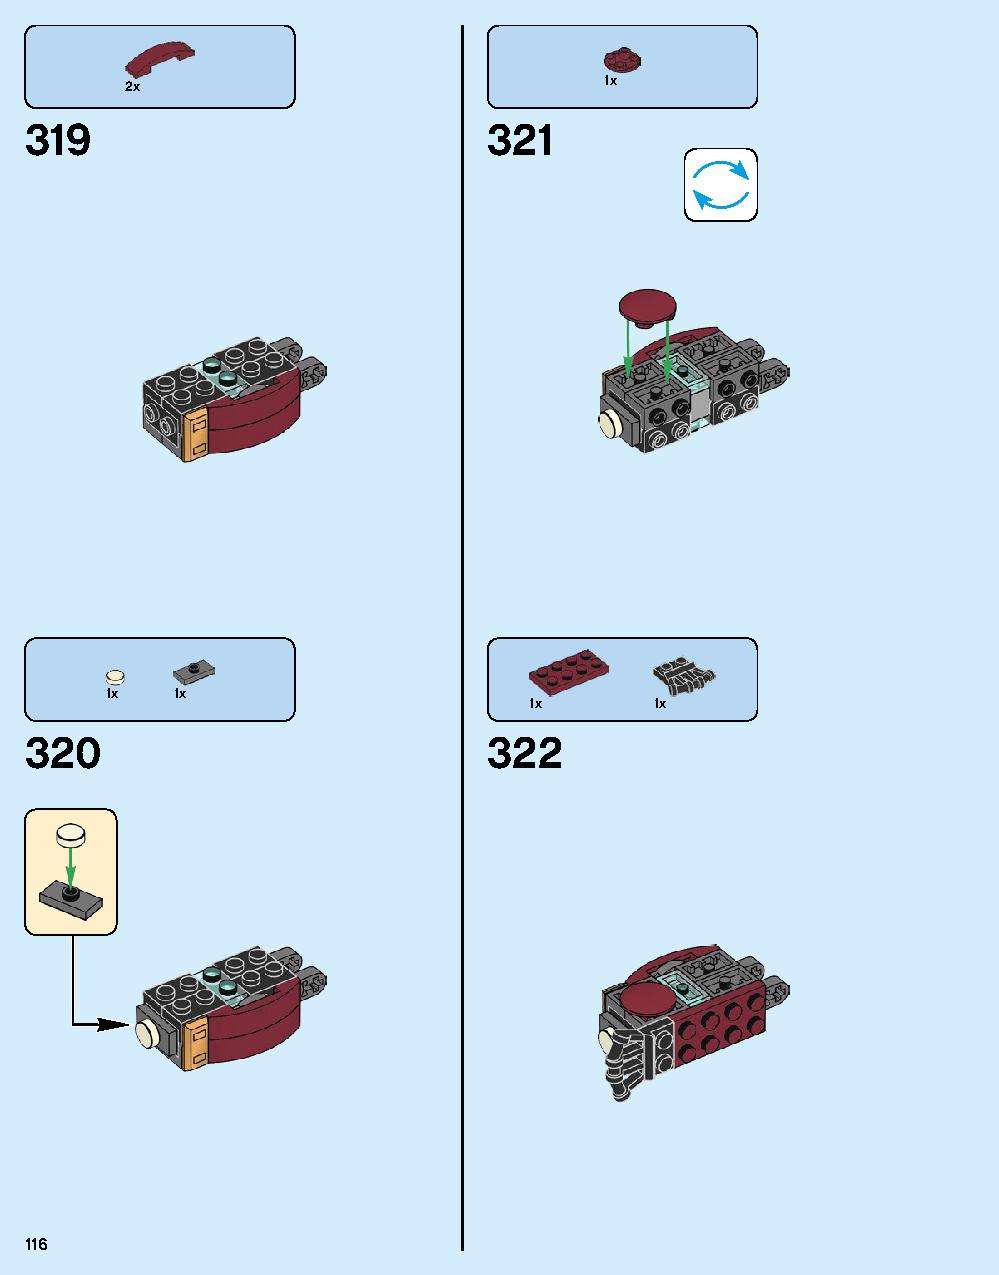 ハルクバスター：ウルトロン・エディション 76105 レゴの商品情報 レゴの説明書・組立方法 116 page